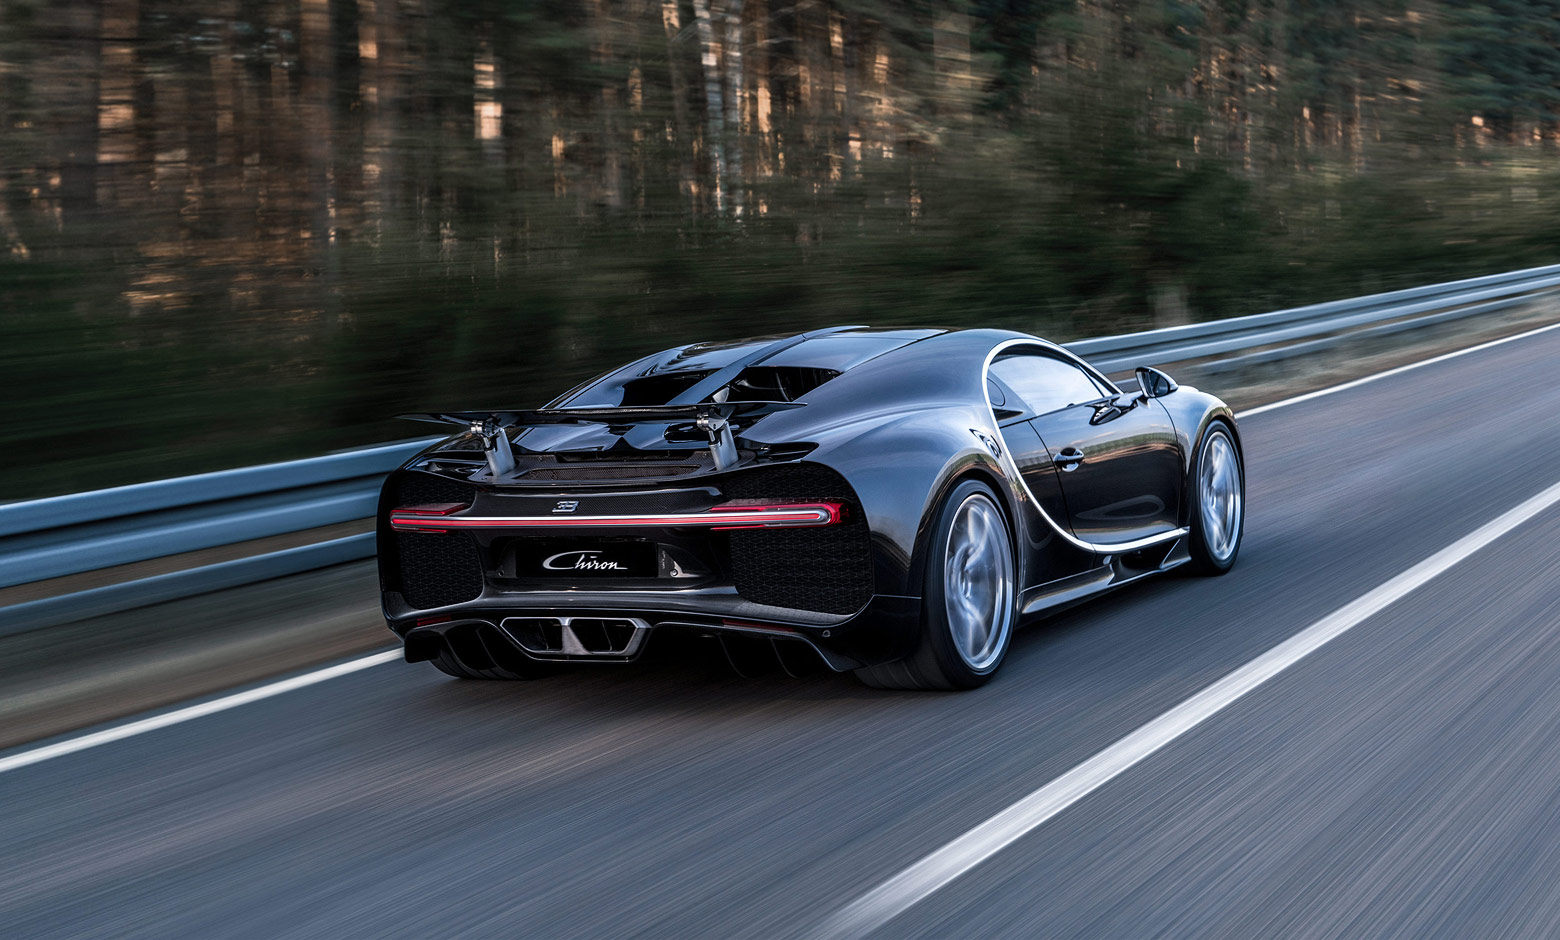 Ya se ha vendido la mitad de la producción del Bugatti Chiron: 200 de las 500 unidades ya tienen dueño